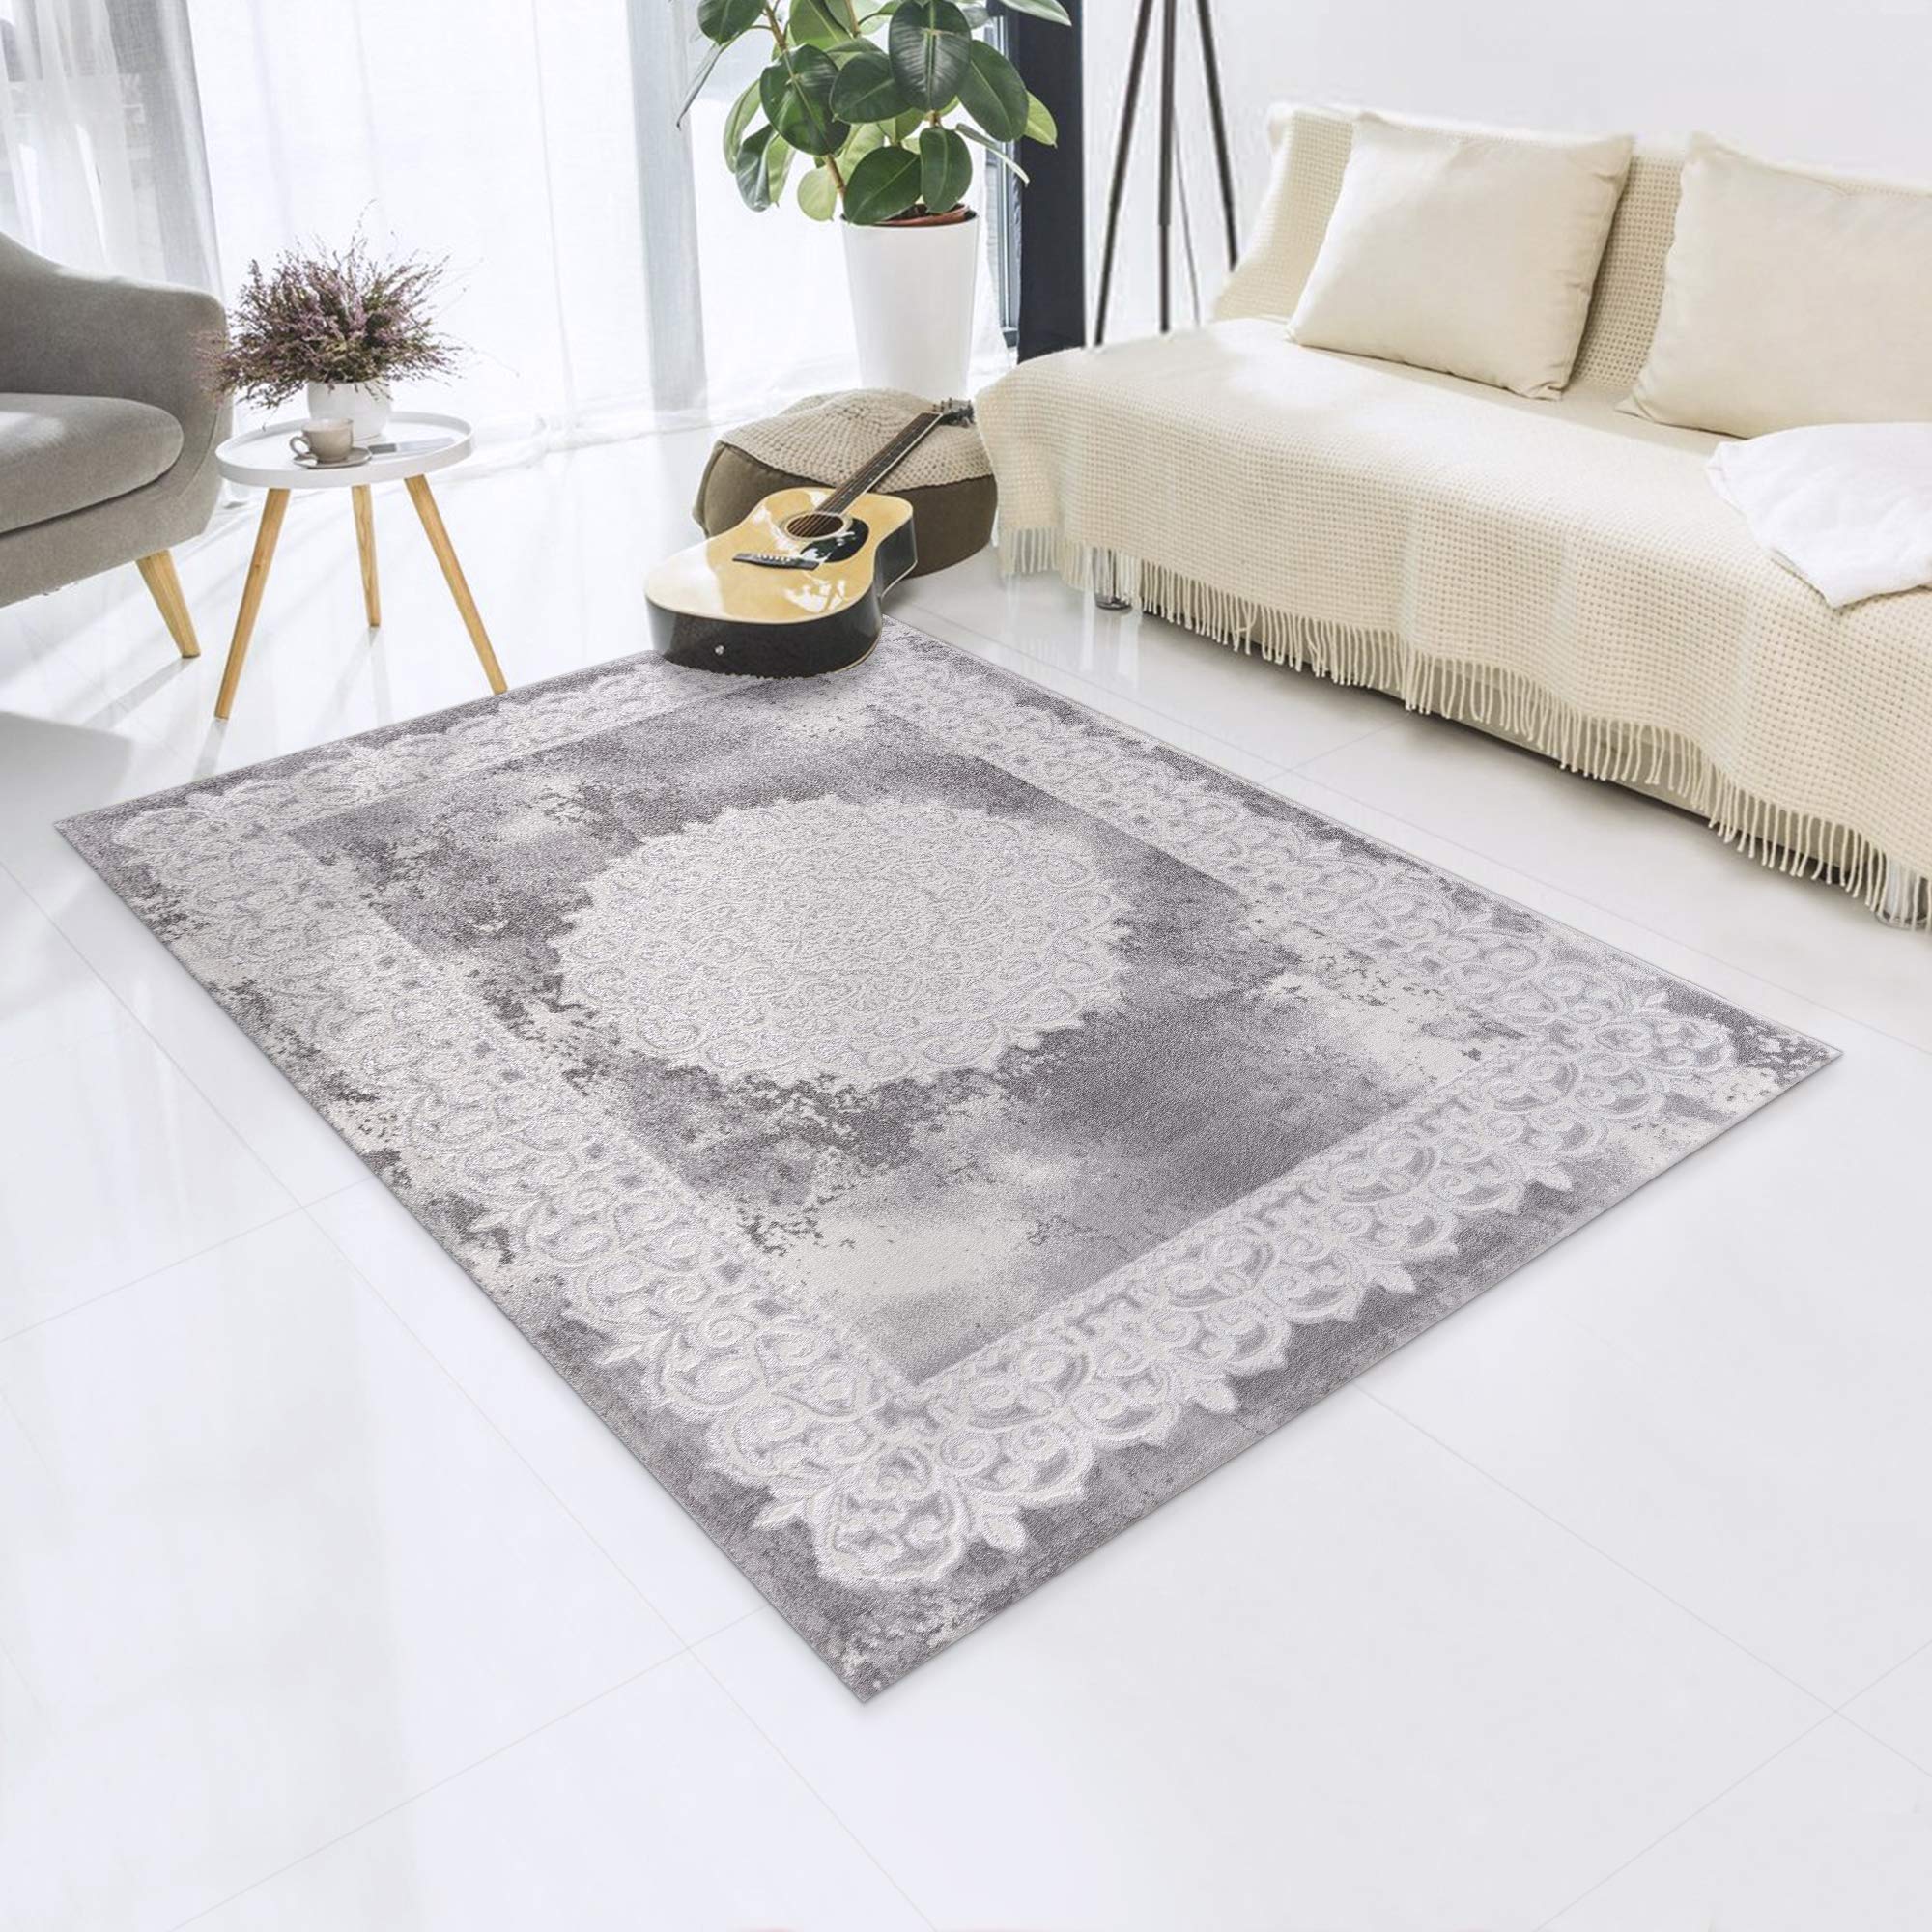 Impression Teppich Wohnzimmer Deko - Kurzflor Teppich im Vintagelook Öko-Tex zertifizierter - Hellgrau-traditionell - Größe 120x160